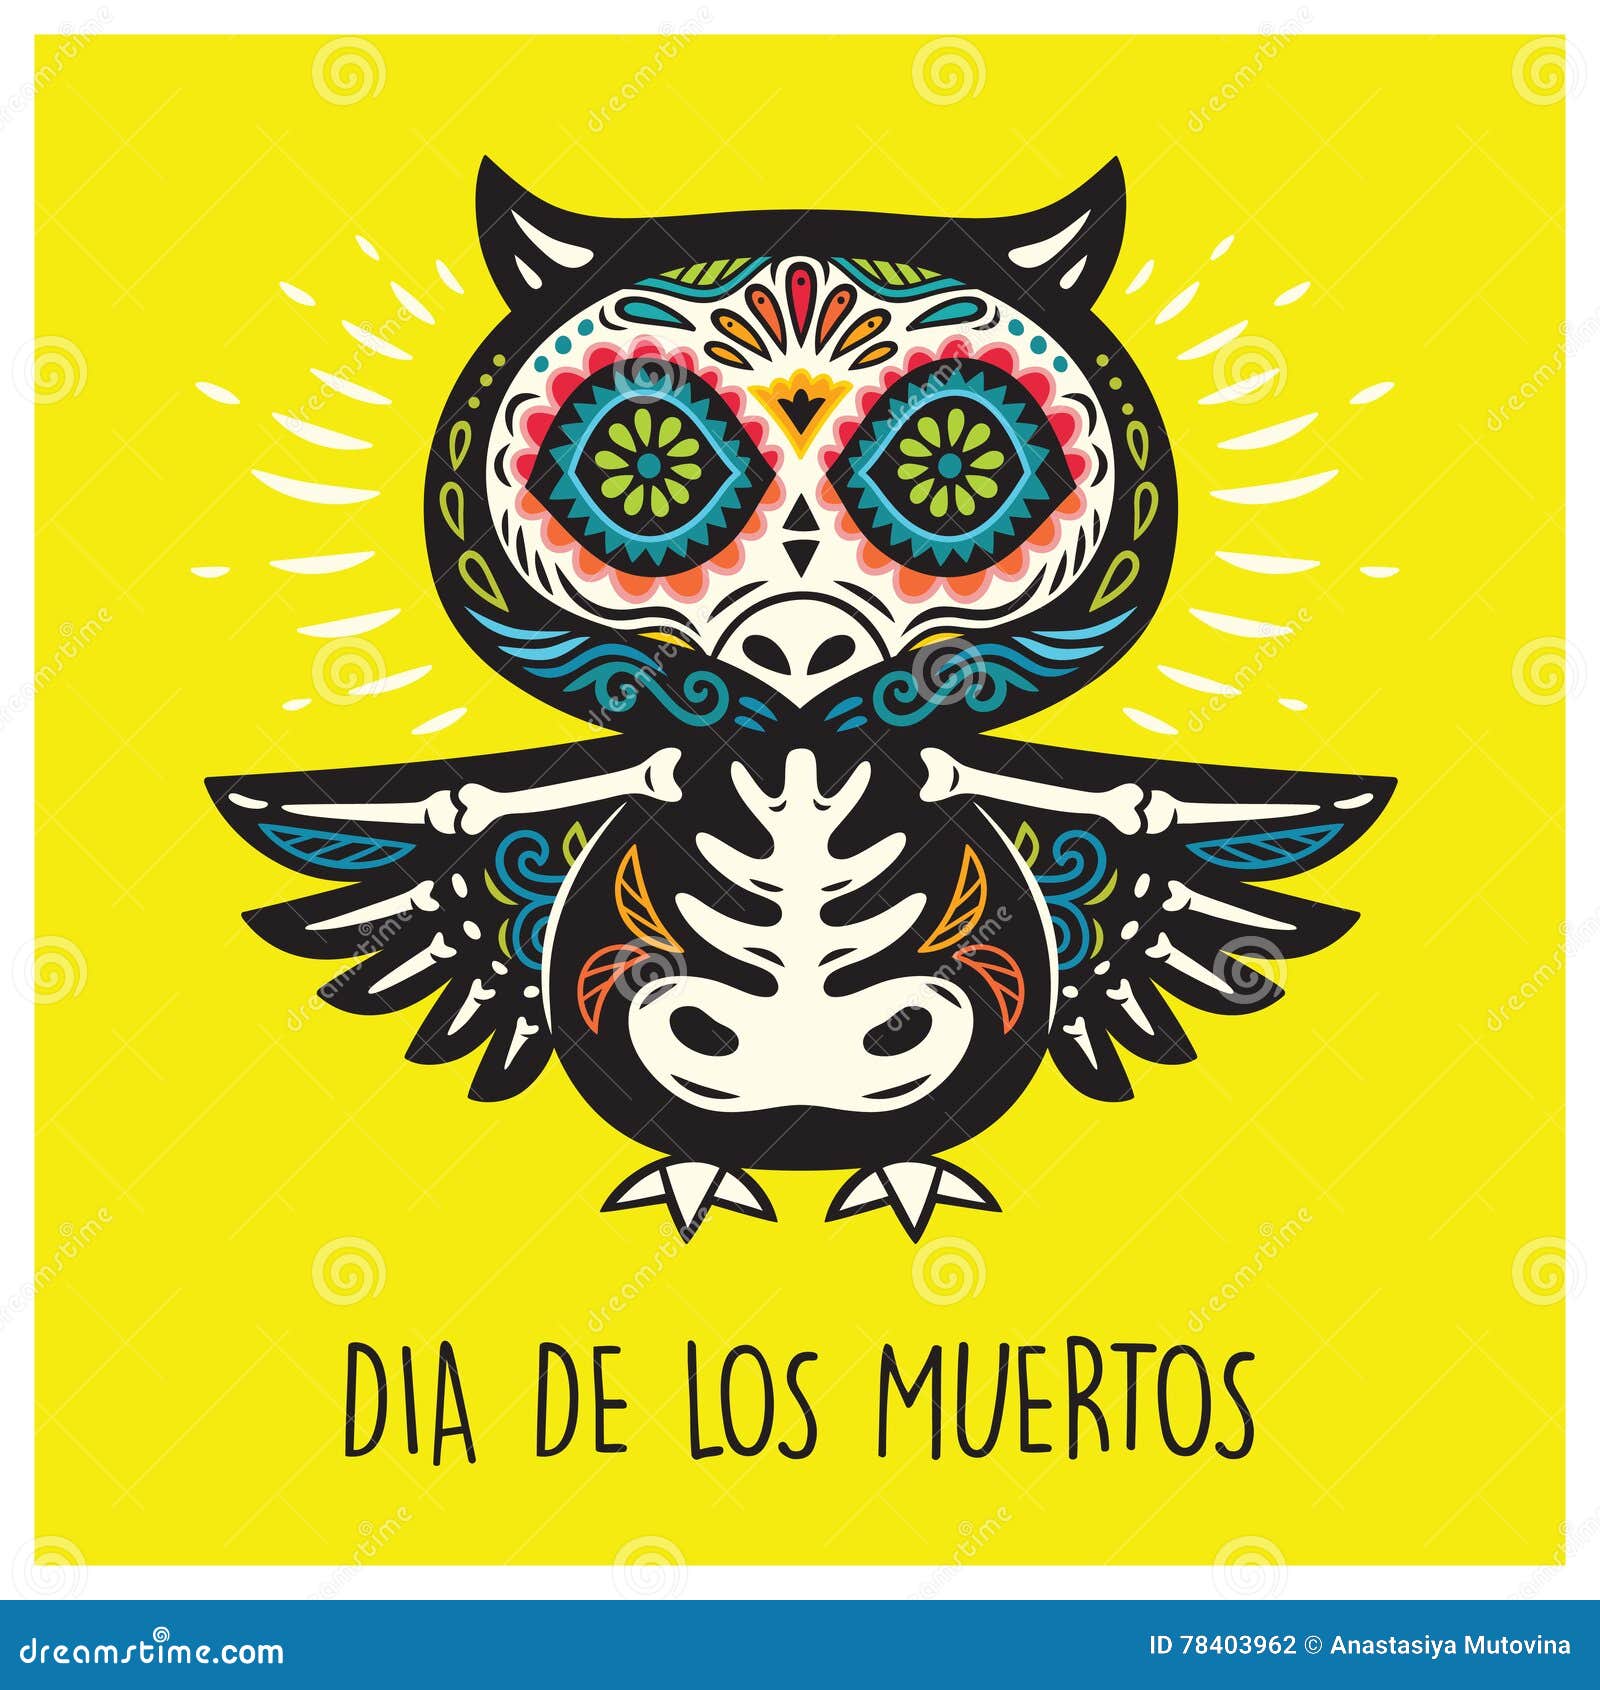 dia de los muertos. greeting card with sugar skull owls.